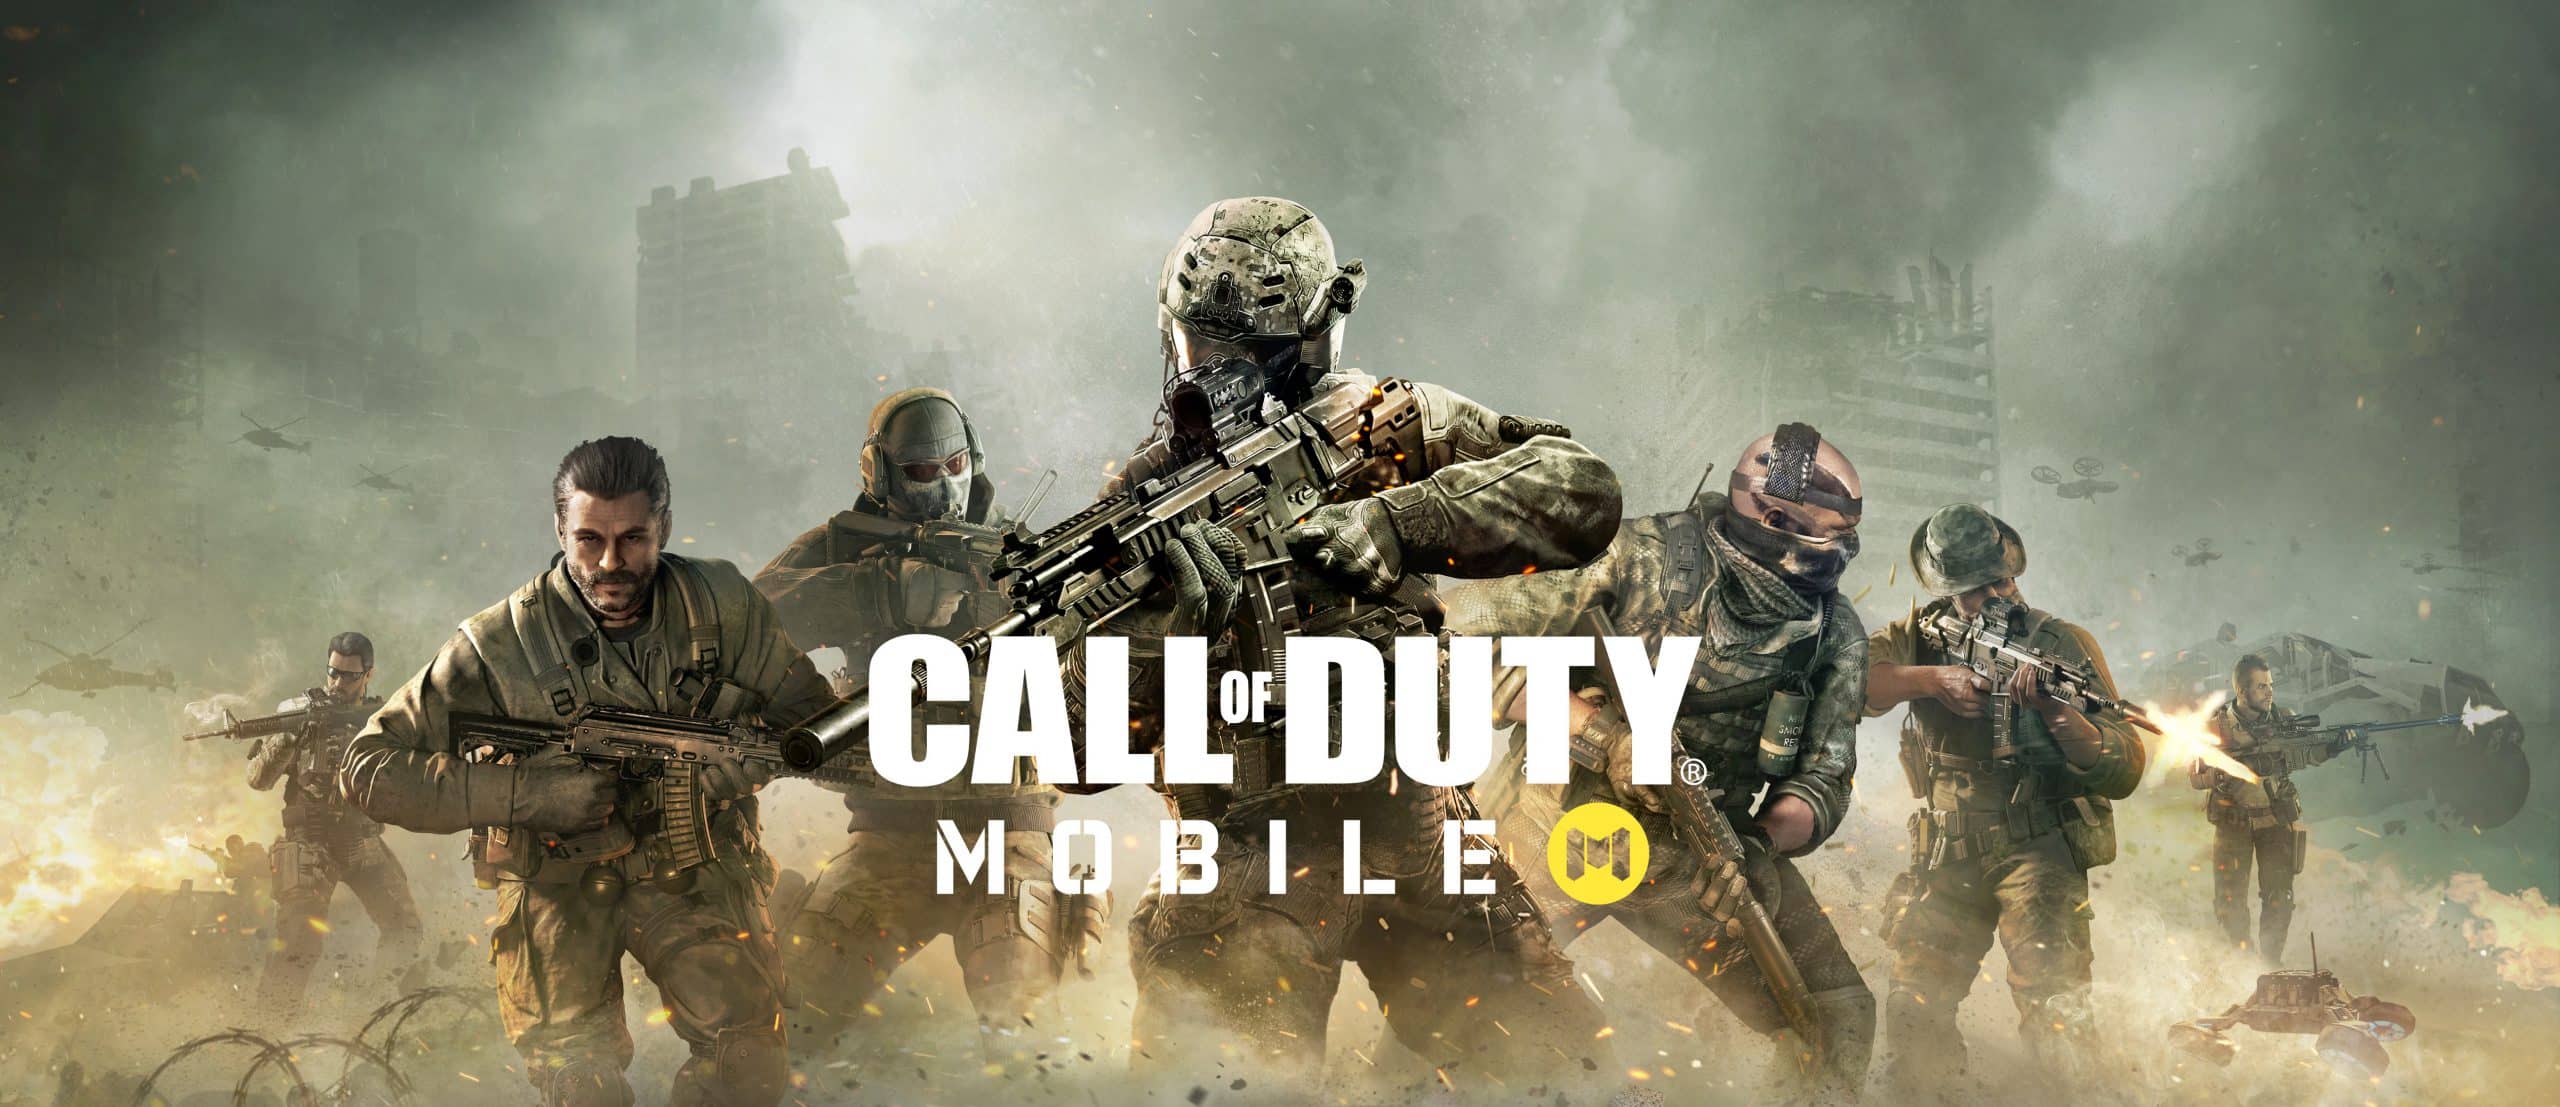 การีนาเตรียมเปิดให้บริการCall of Duty: Mobile》ในเอเชียตะวันออกเฉียงใต้ เร็วๆ นี้!